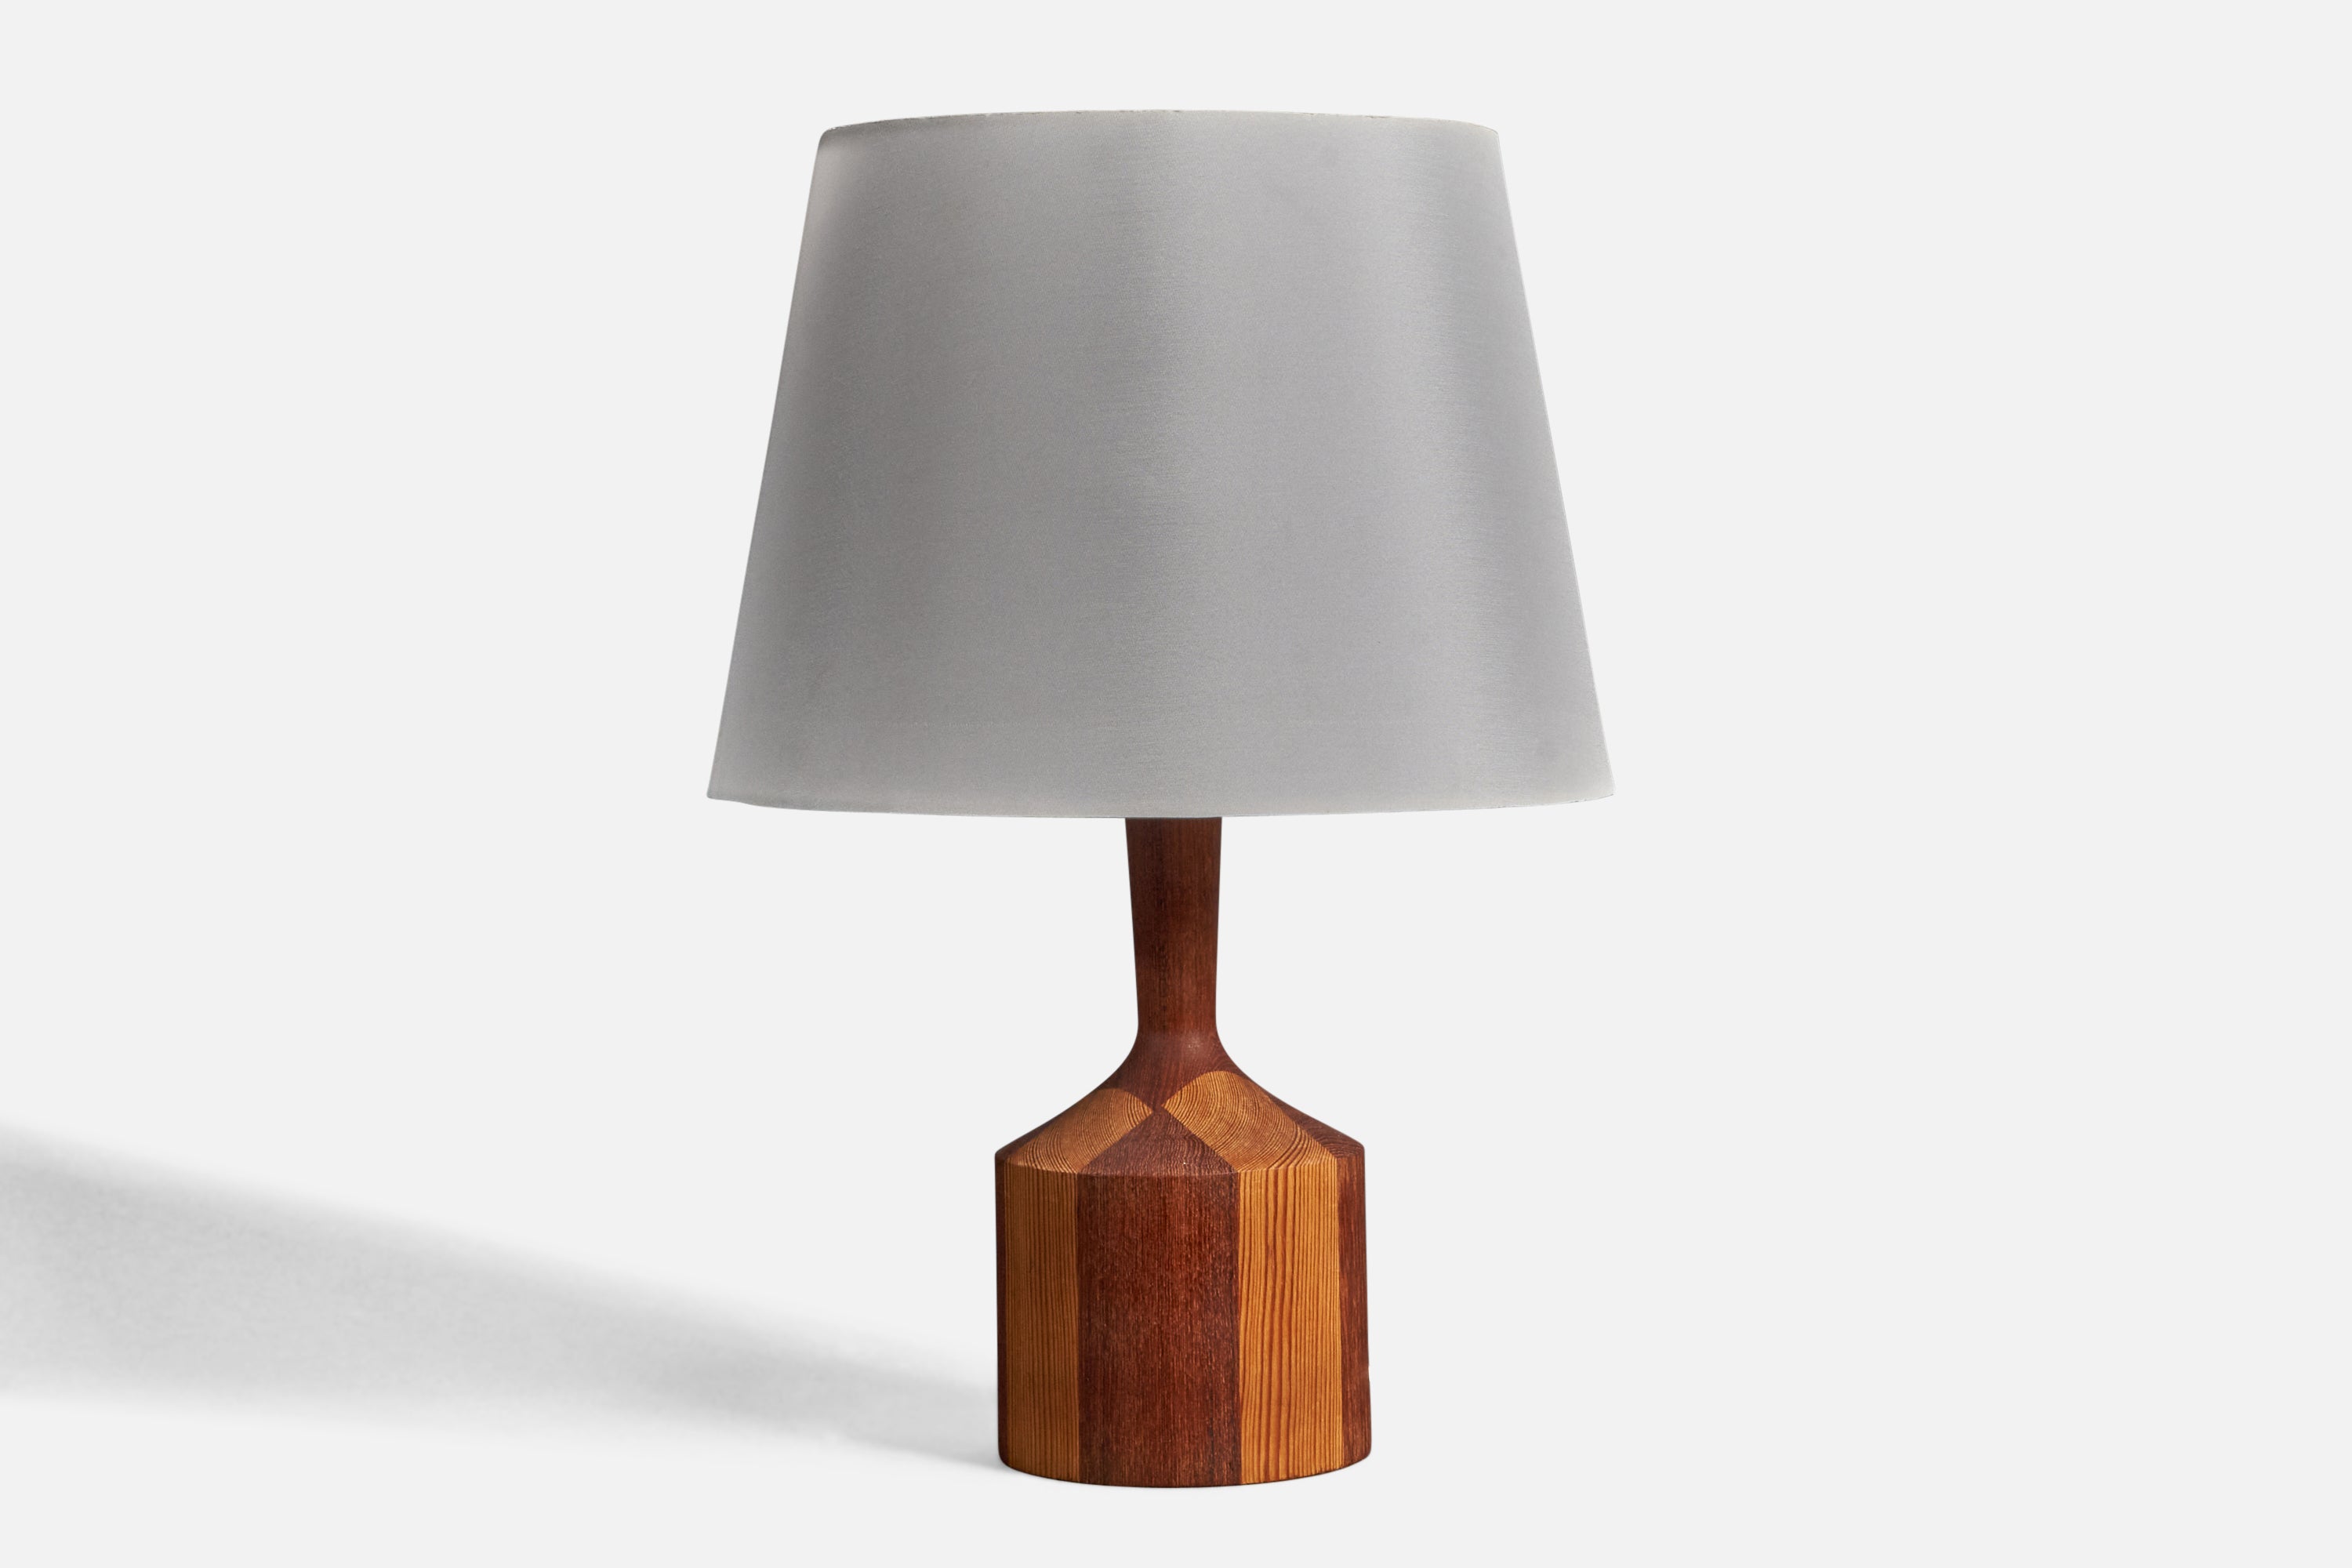 Danish Modernist Designer, Table Lamp, Teak, Pine, Denmark, 1960s For Sale